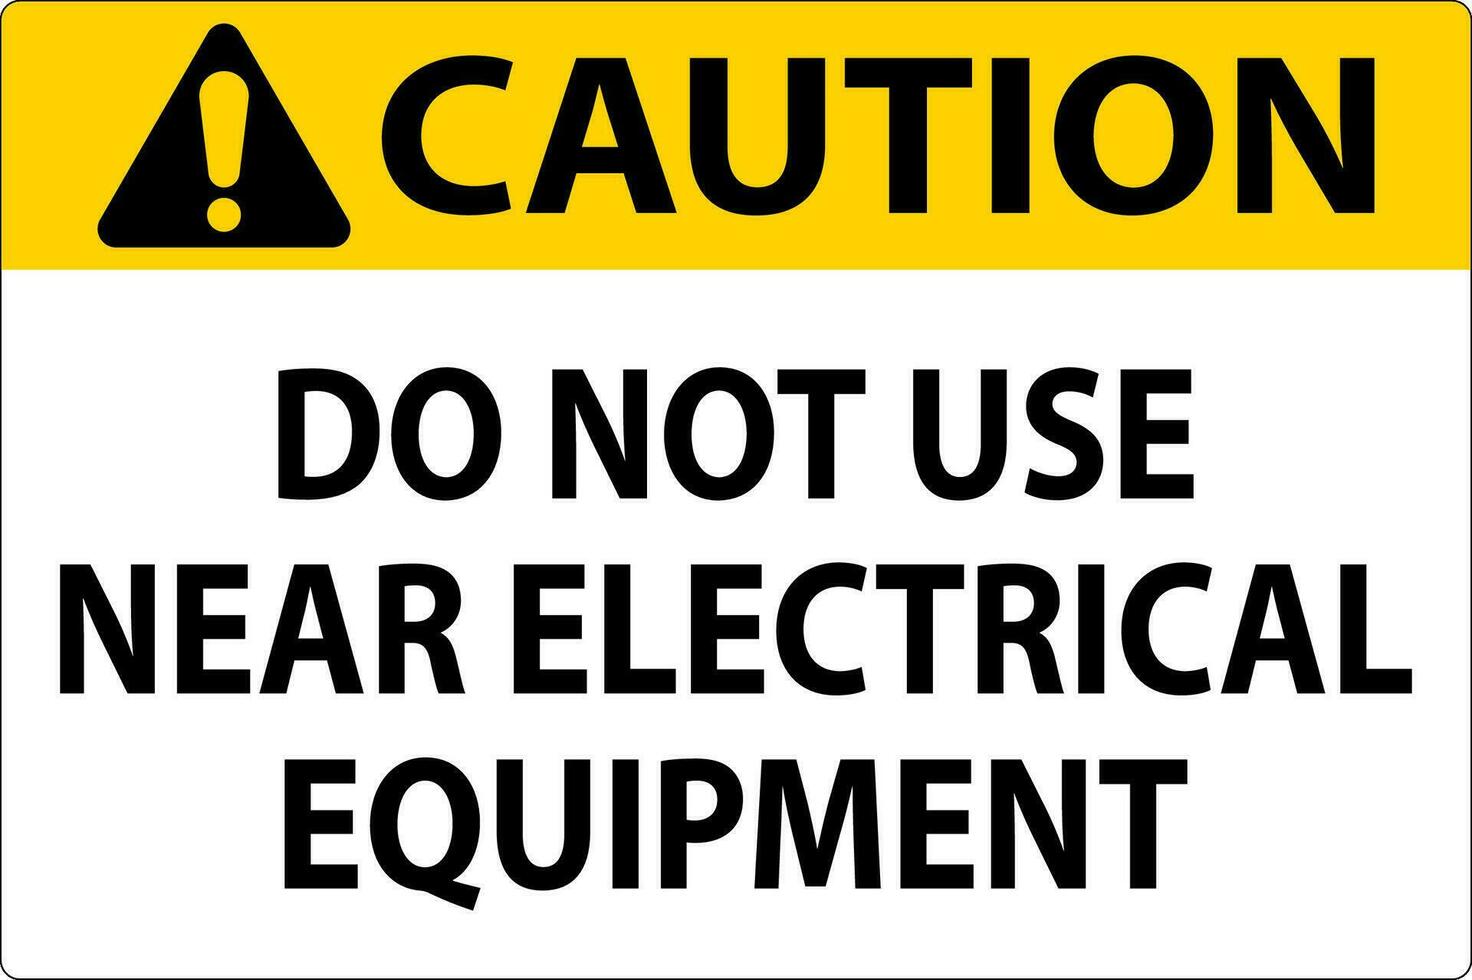 mise en garde faire ne pas utilisation près électrique équipement vecteur